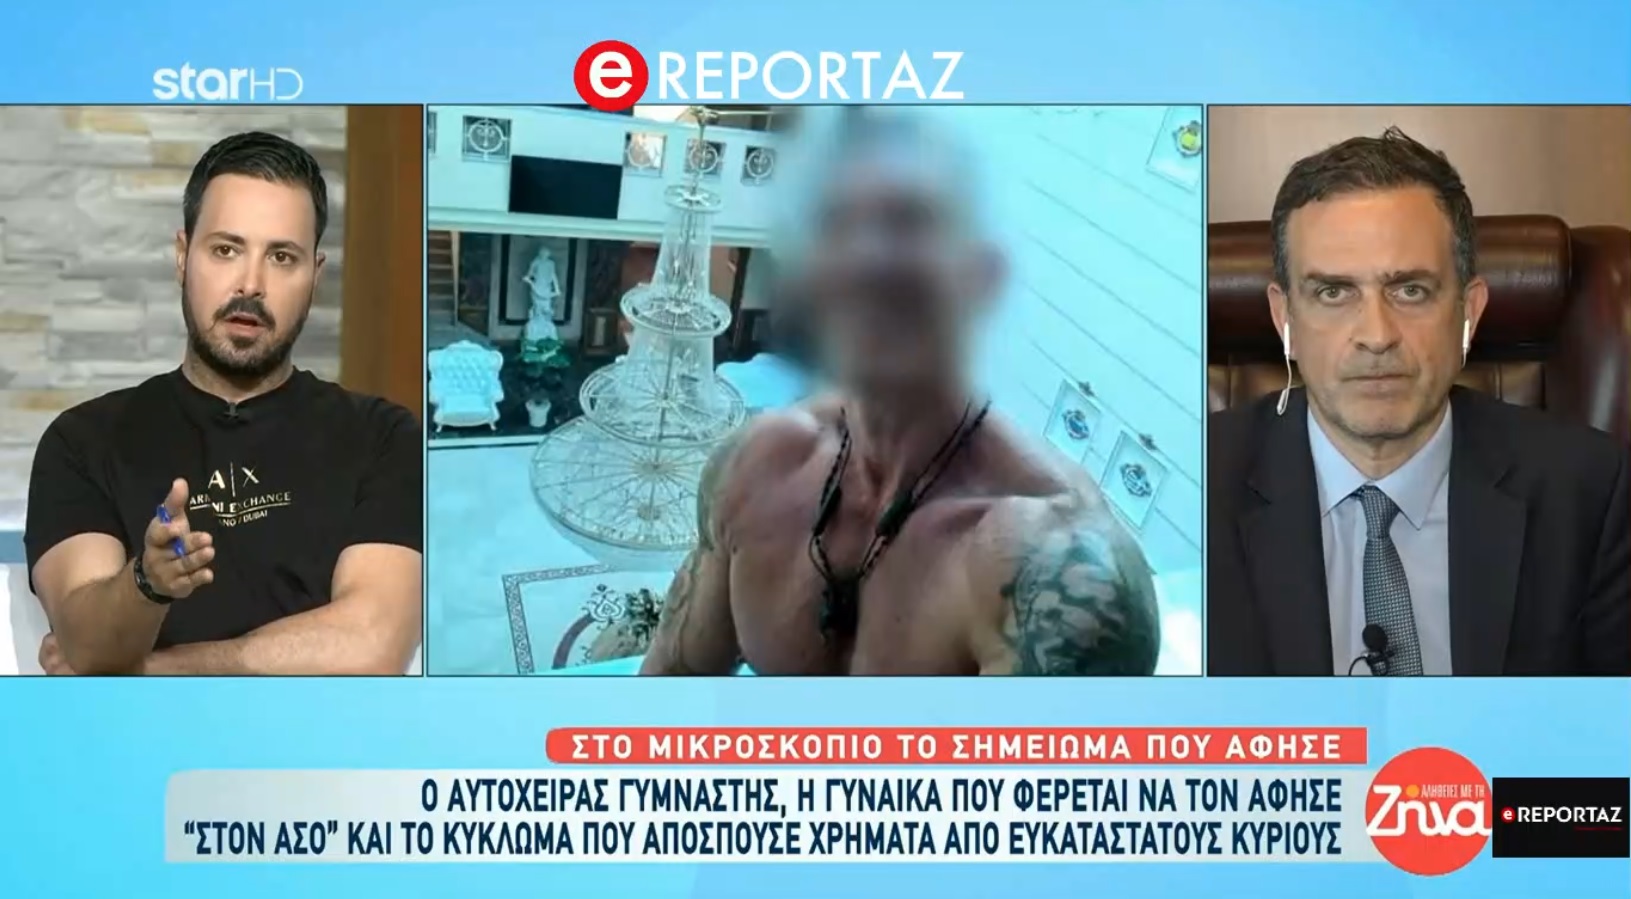 Τι είχε πει ο γυμναστής που αυτοκτόνησε στον φίλο του Όθωνα Παπαδόπουλο - Η απάντηση της Γεωργίας Μπίκα (βίντεο)